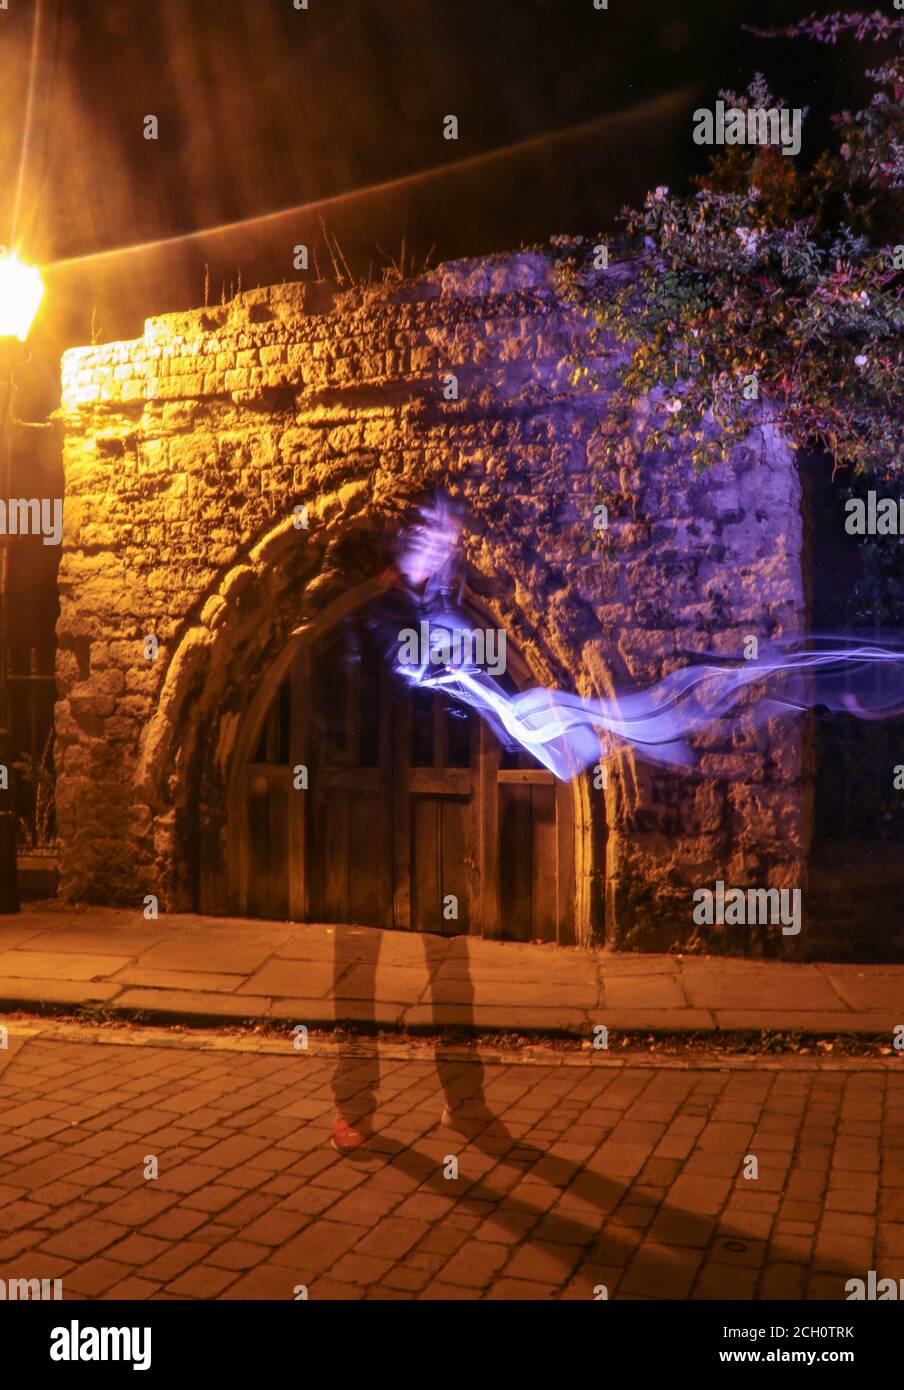 Wunderschöne ätherische Beleuchtung mit Geistereffekt, Historic Rochester, Kent, England, Großbritannien, Vereinigtes Königreich Stockfoto